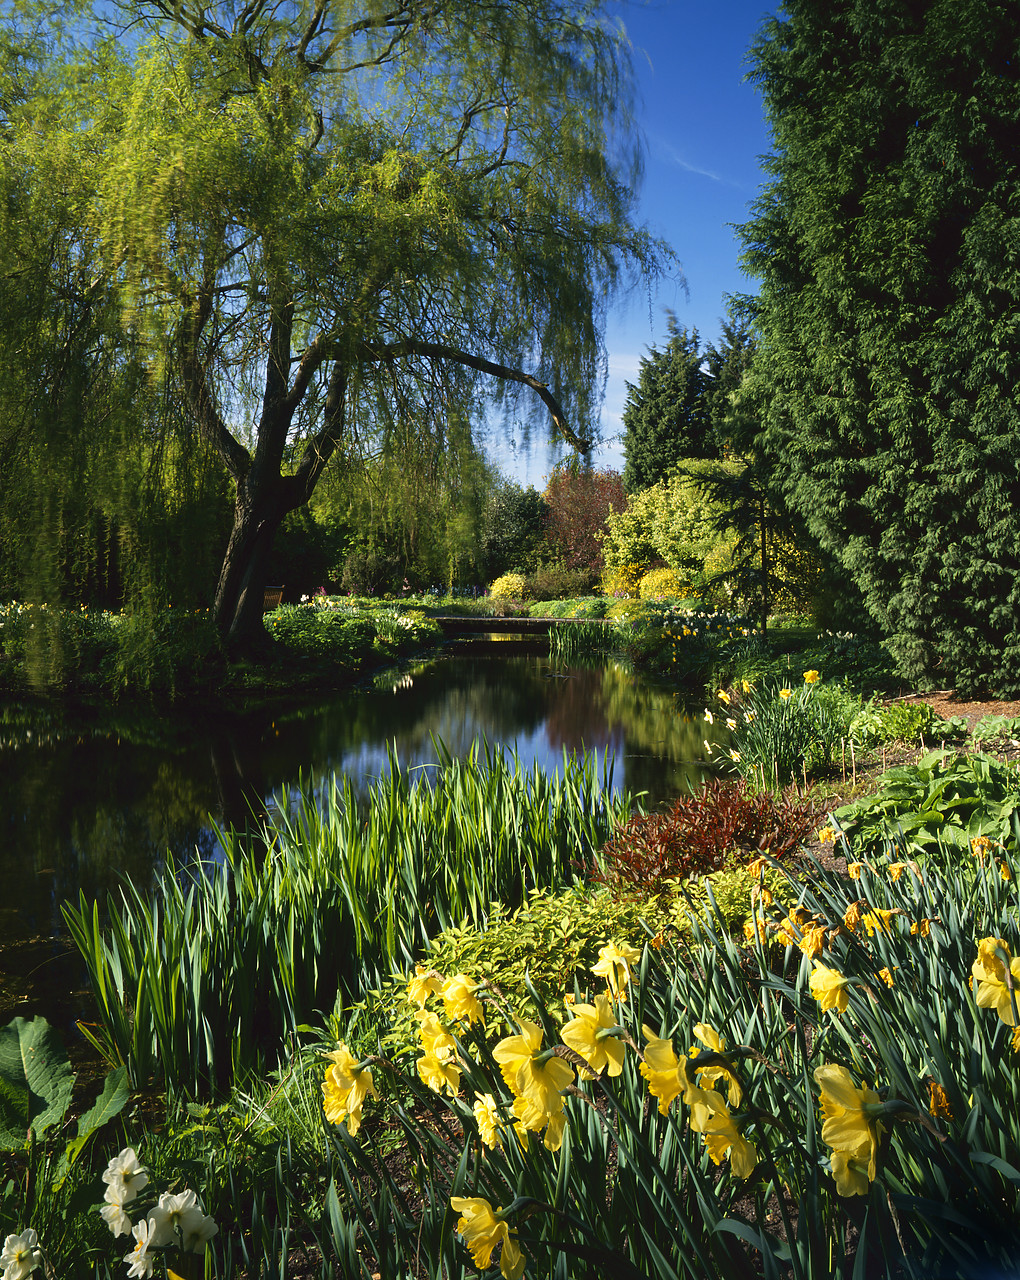 #965993-3 - Gooderstone Water Gardens, Norfolk, England